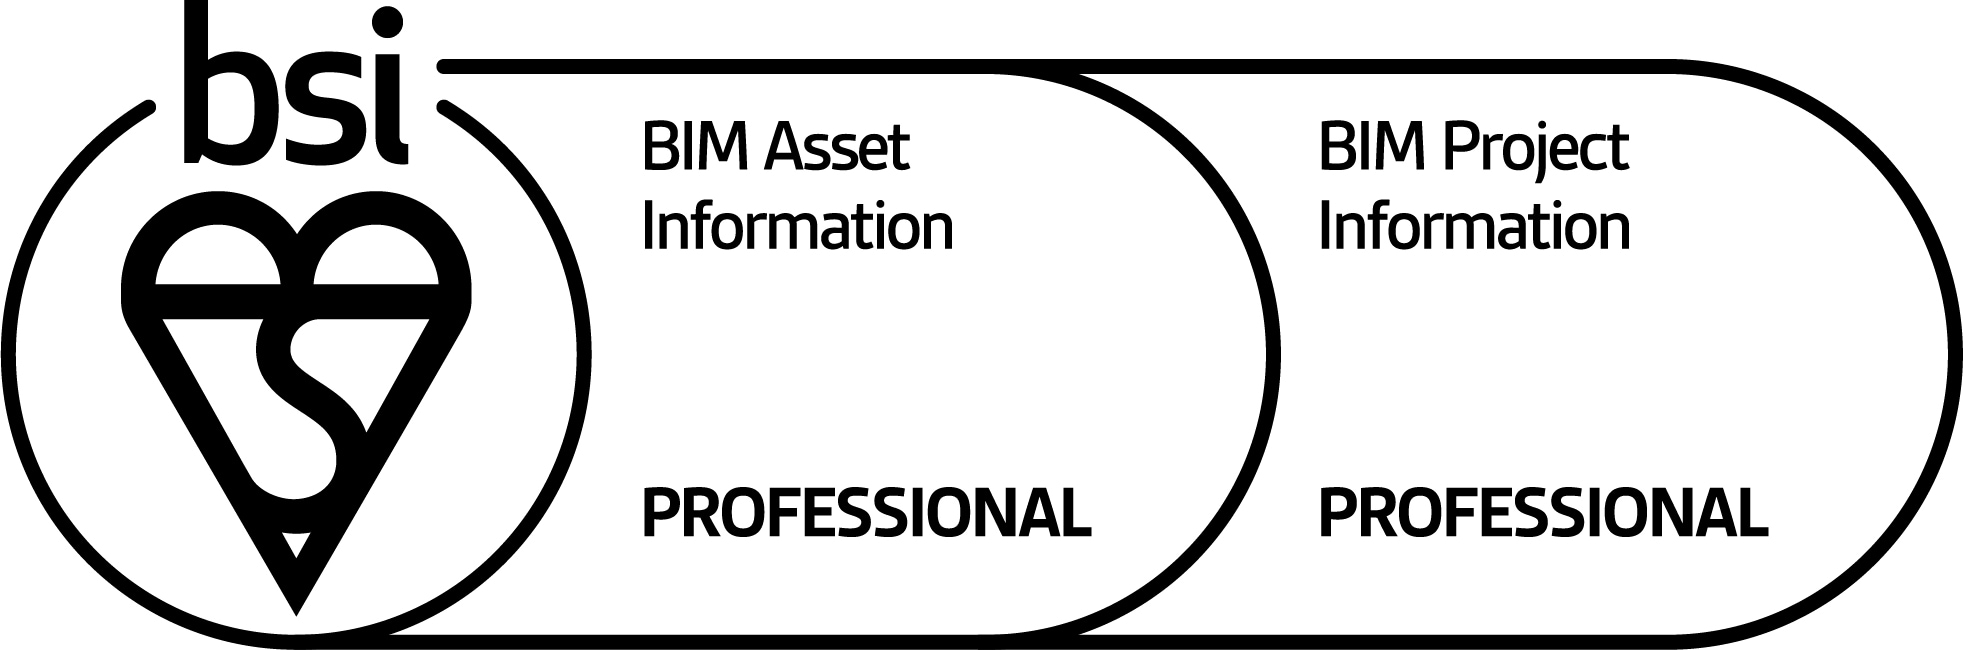 mark-of-trust-multi-scheme-BIM-Asset-Pro-BIM-Project-Pro-logo-En-GB-0623.jpg